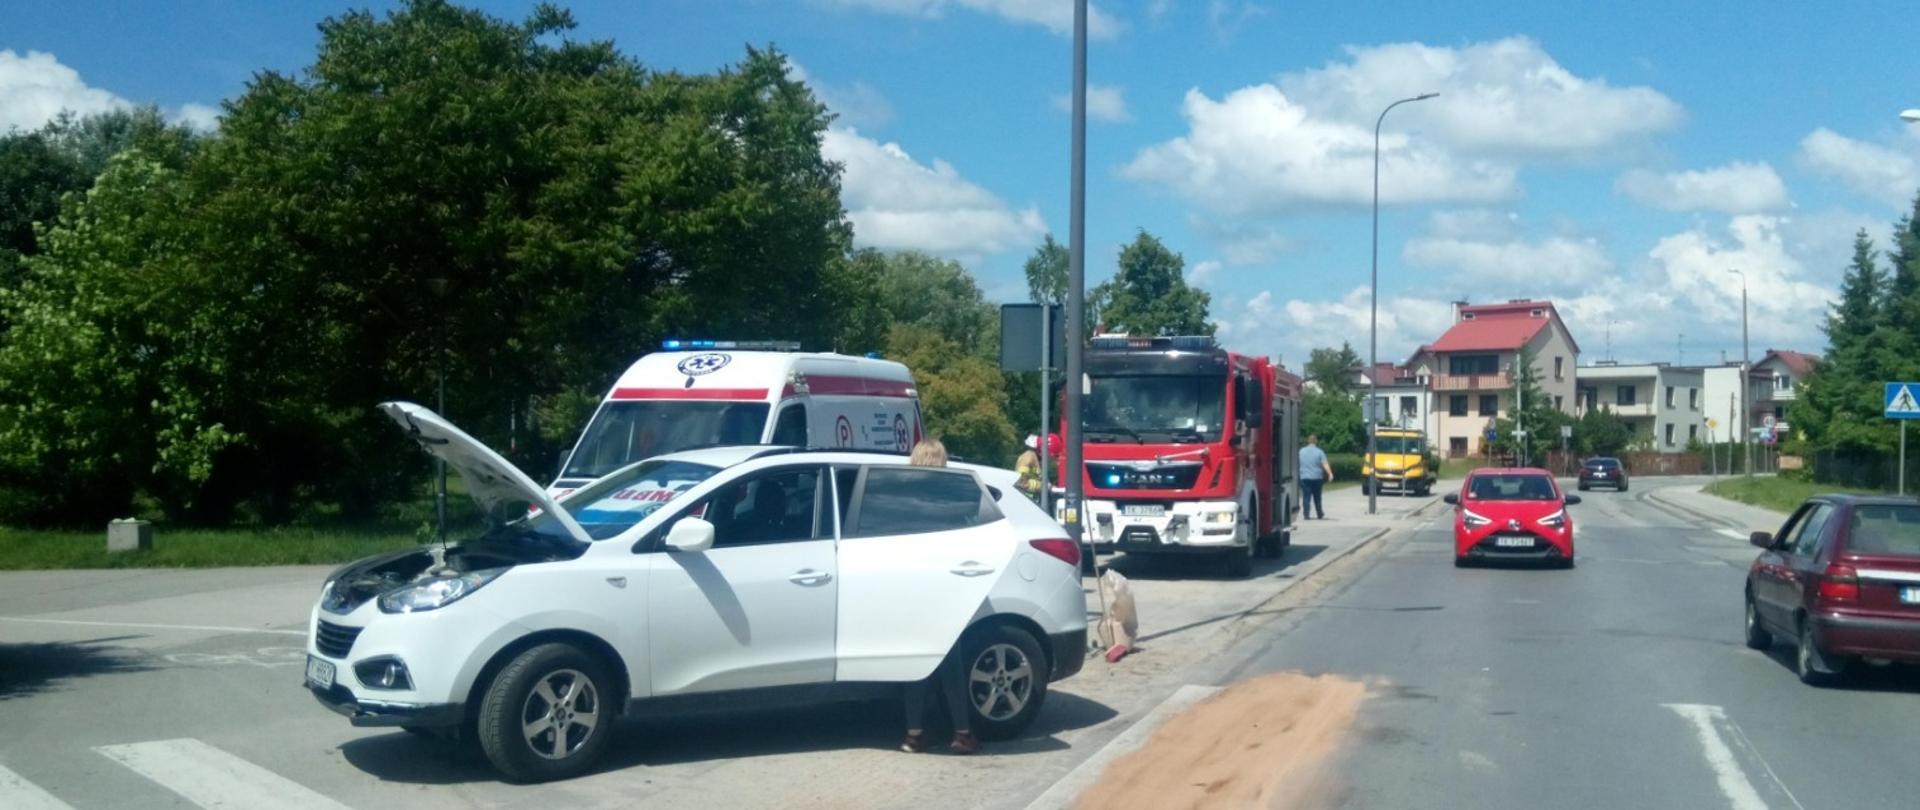 Zdjęcie przedstawia Aleję Legionów w Kielcach. Na pierwszym planie samochód osobowy biały Hyundai, który brał udział w kolizji drogowej. Za nim widać stojący ambulans i wóz strażacki. Na jezdni duża plama rozsypanego sorbentu.